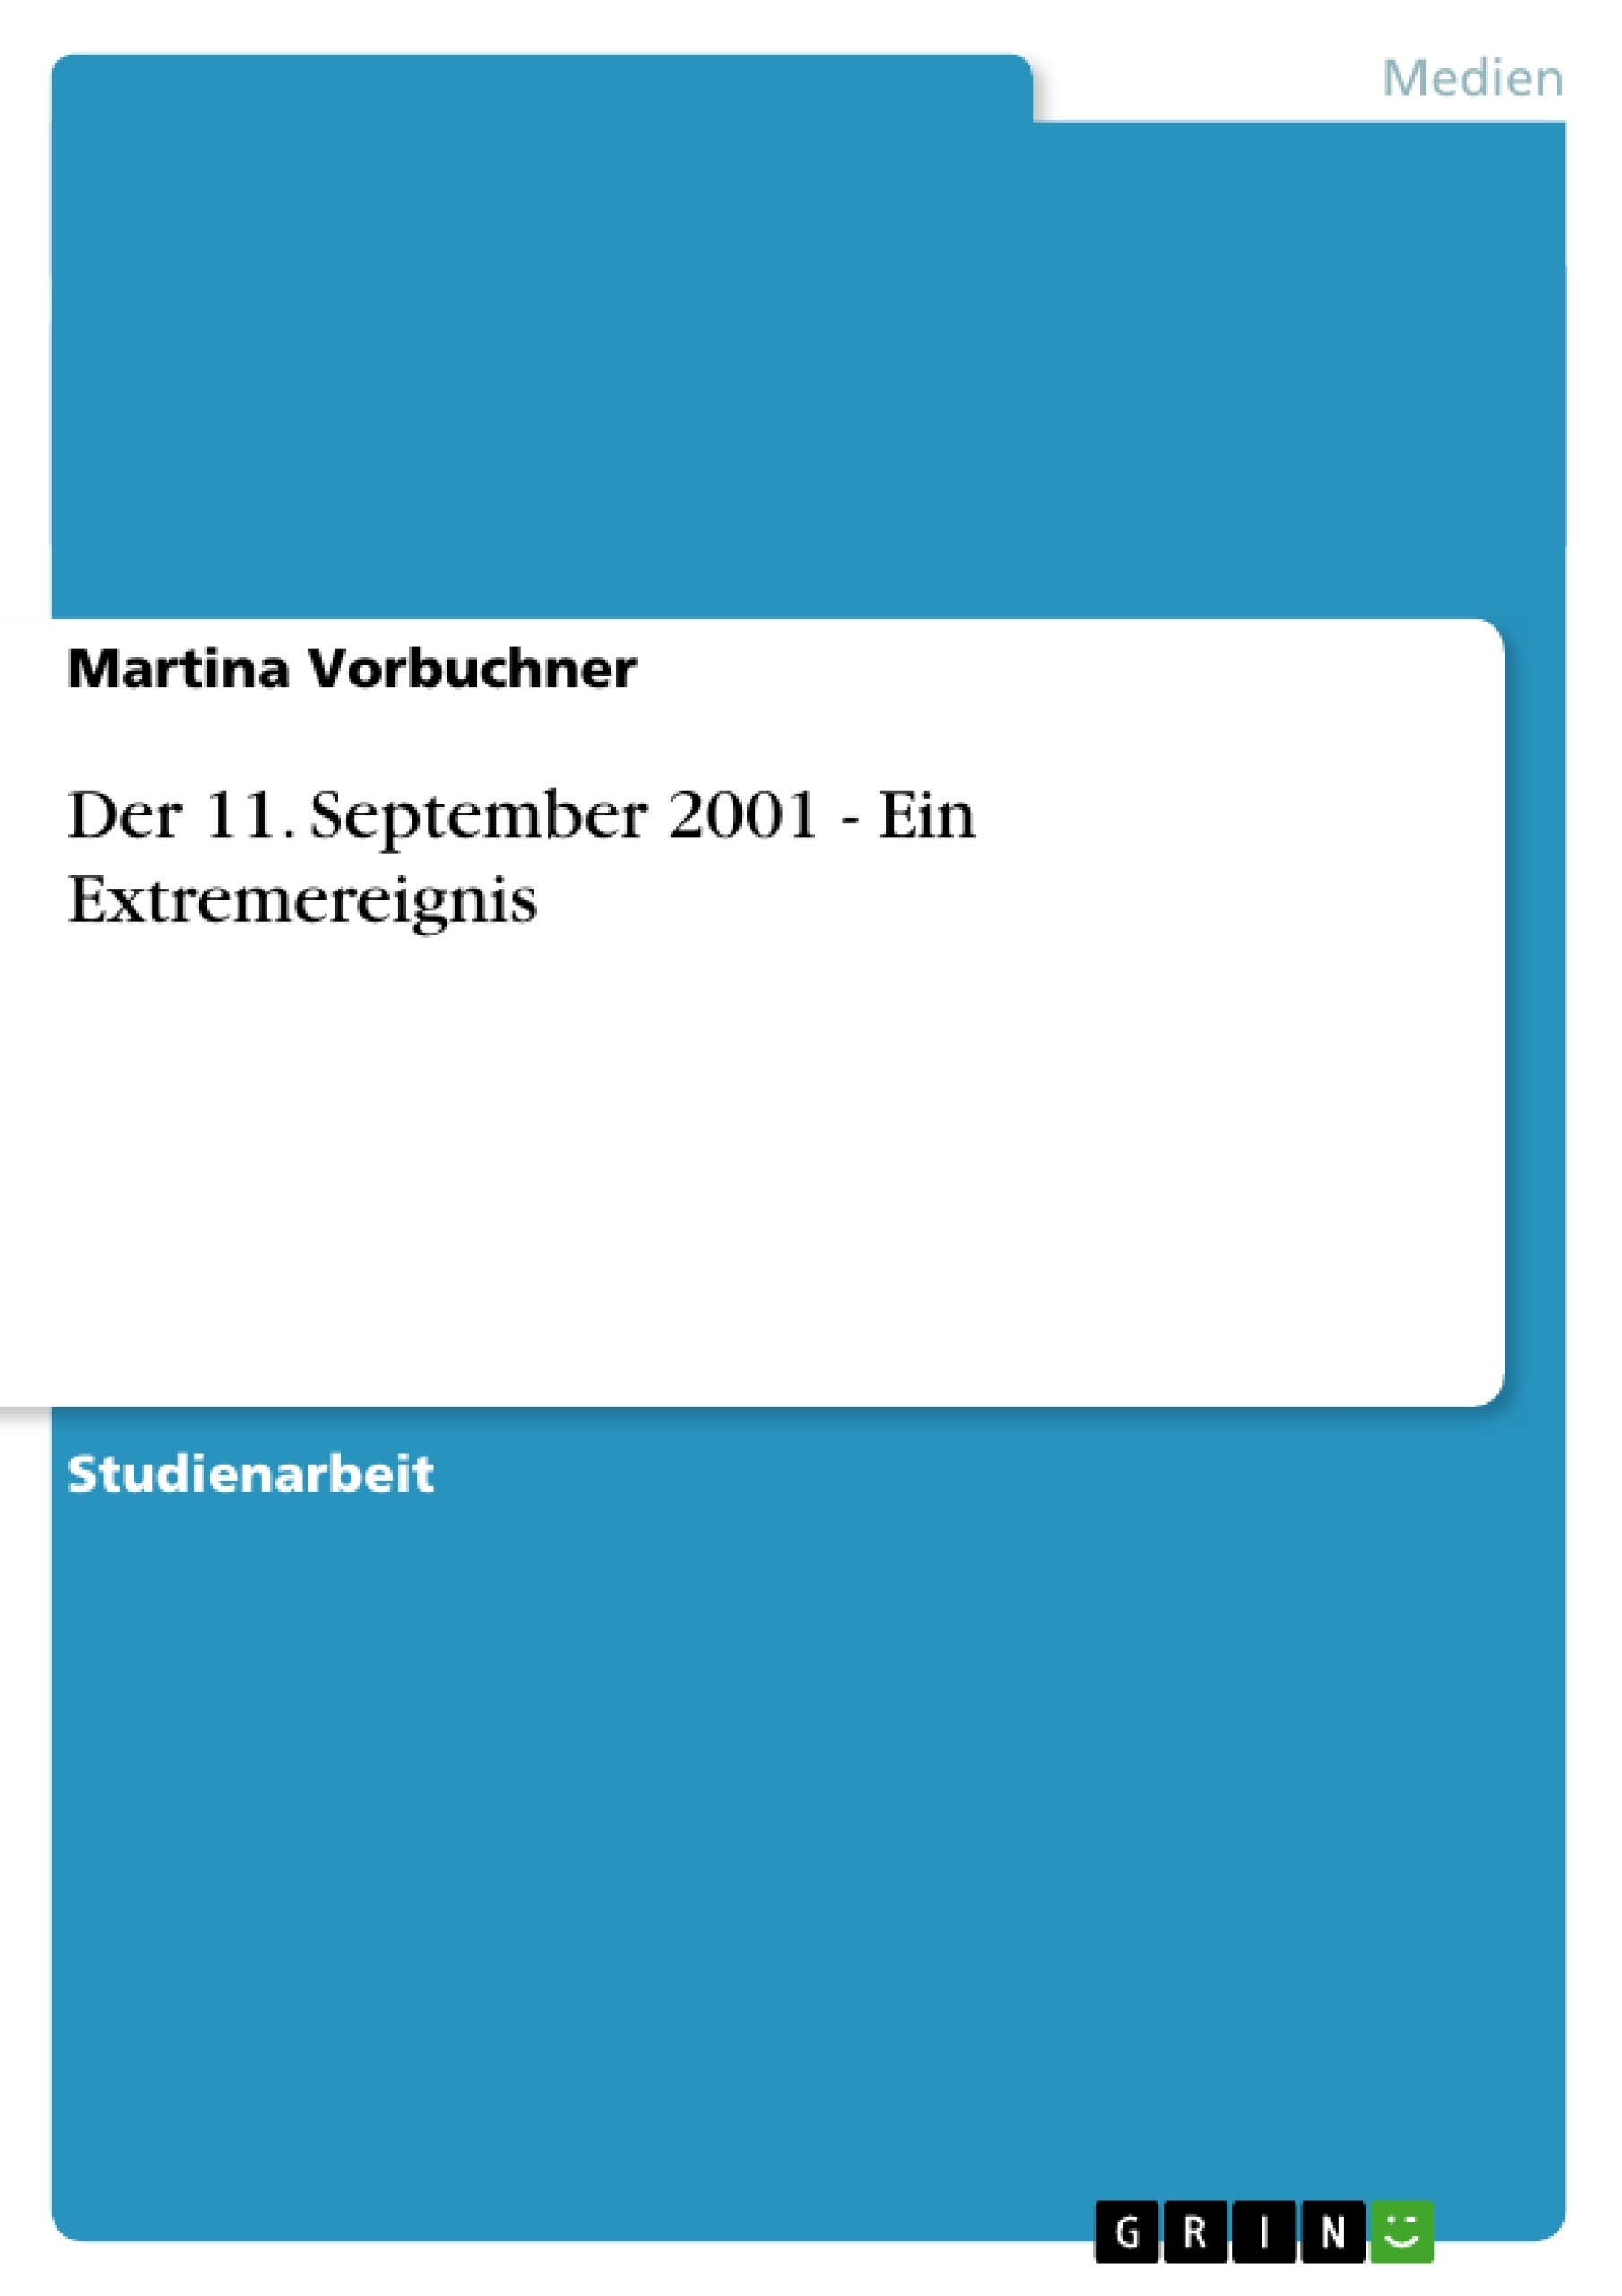 Título: Der 11. September 2001 - Ein Extremereignis